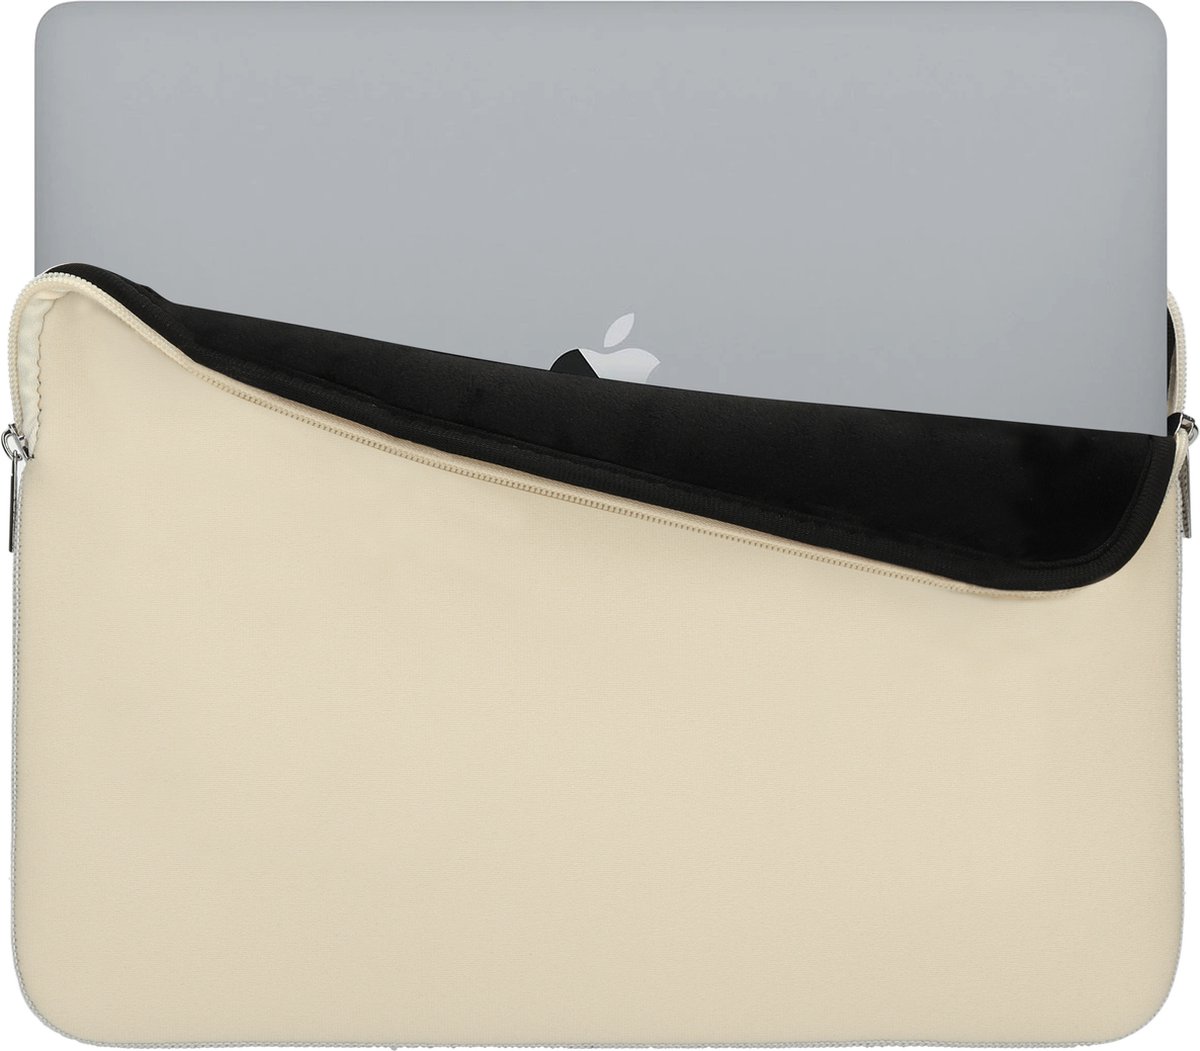 Mobiparts Neoprene Macbook Sleeve 13-inch Cream hoesje